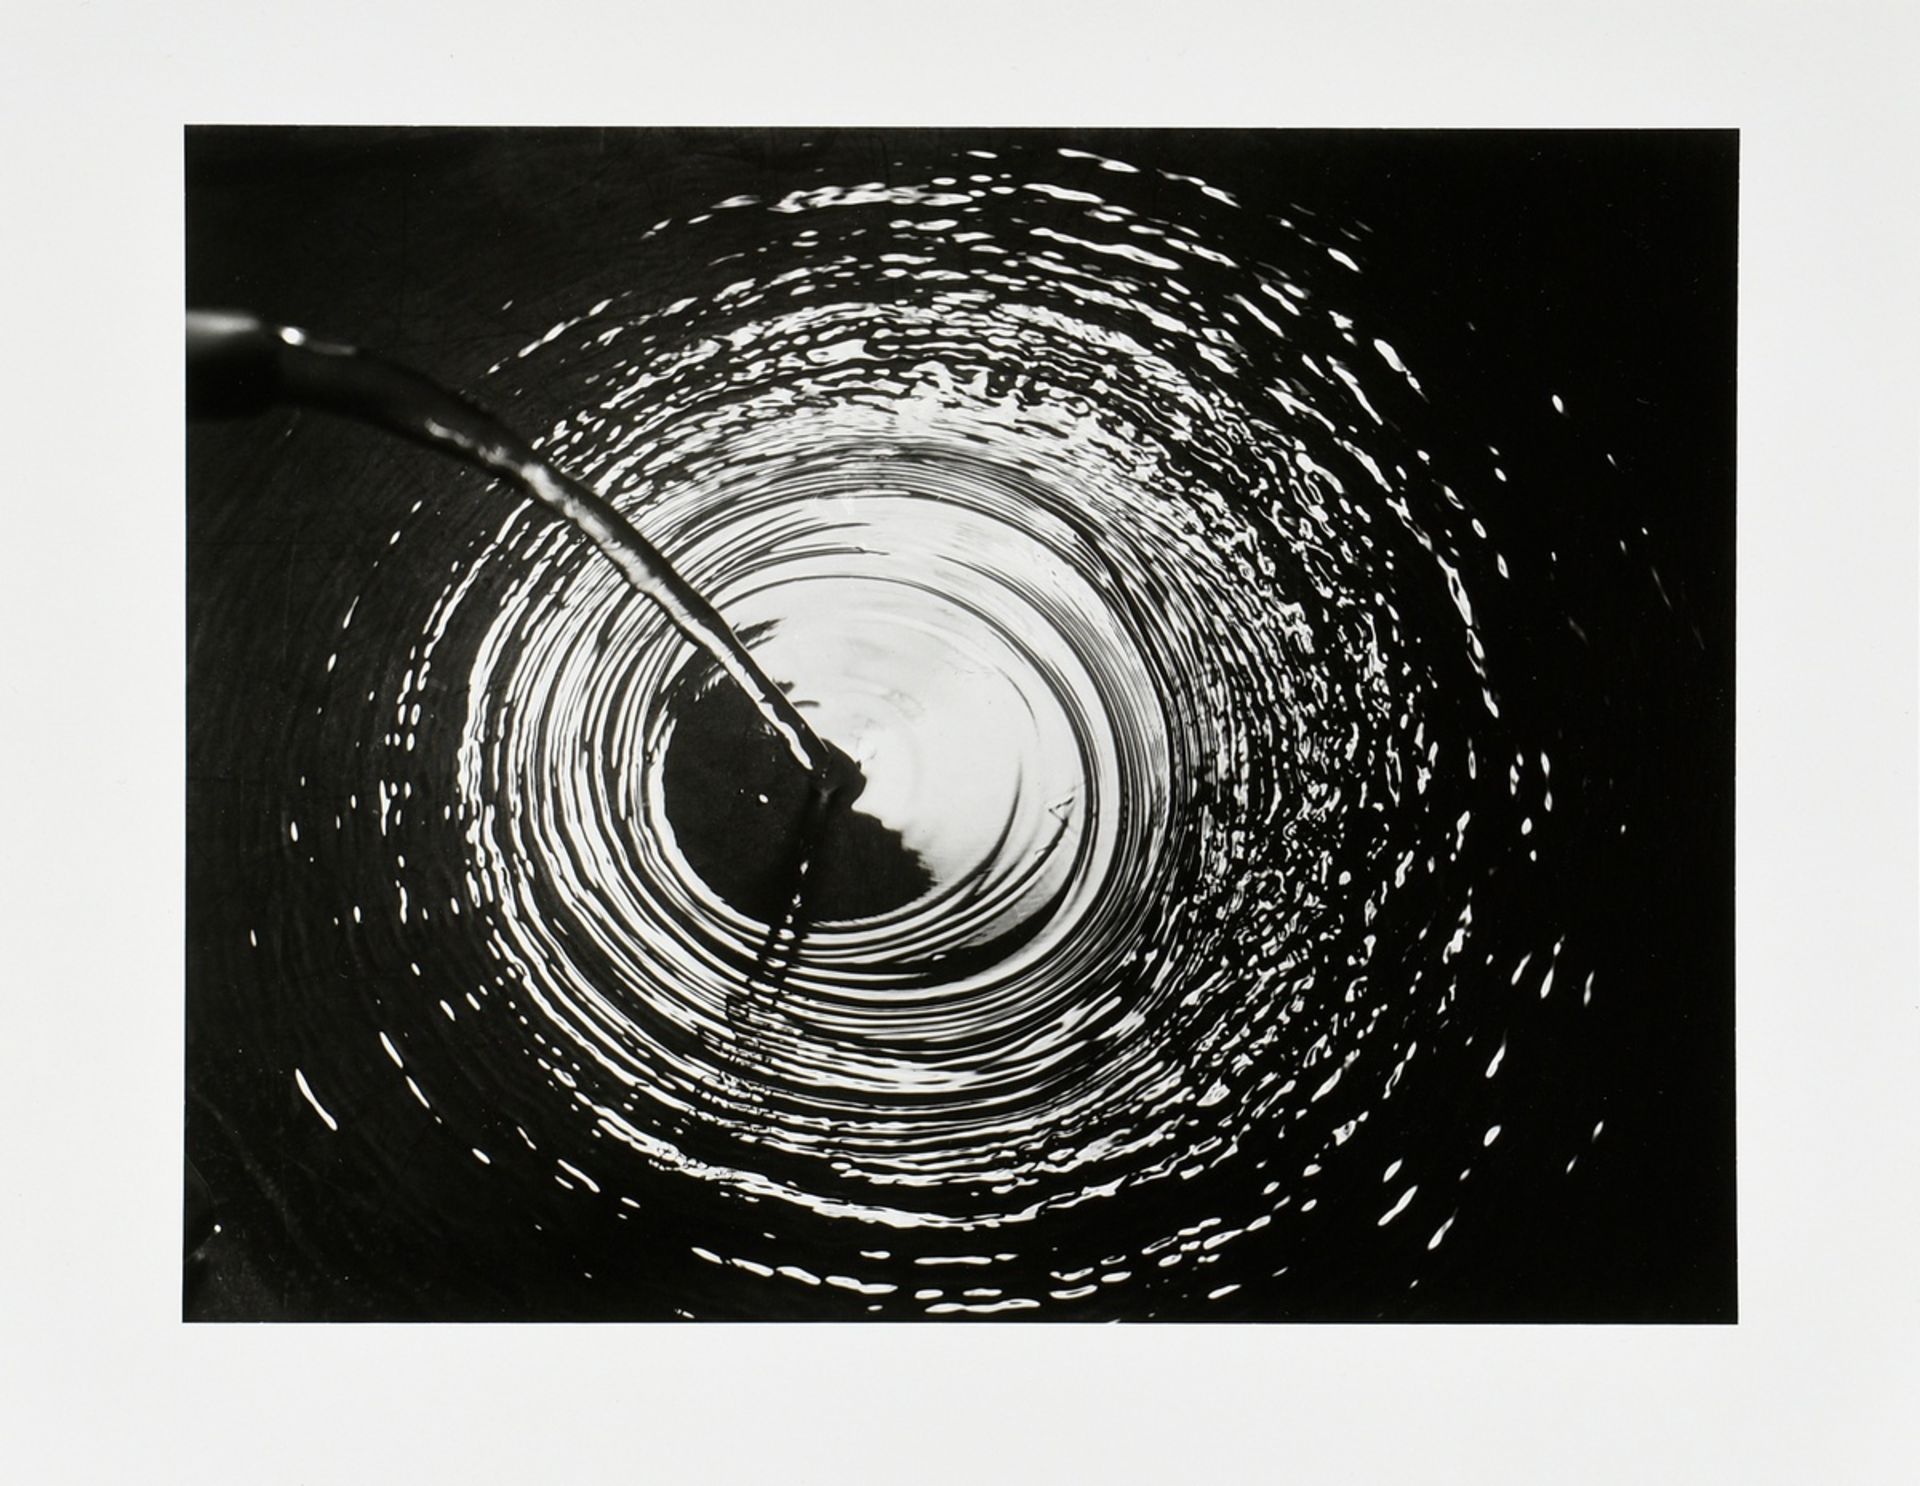 Schneiders, Toni (1920-2006) "Wasserkreise" 1952/2015, Fotografie, Griffelkunst, verso Nachlassanga